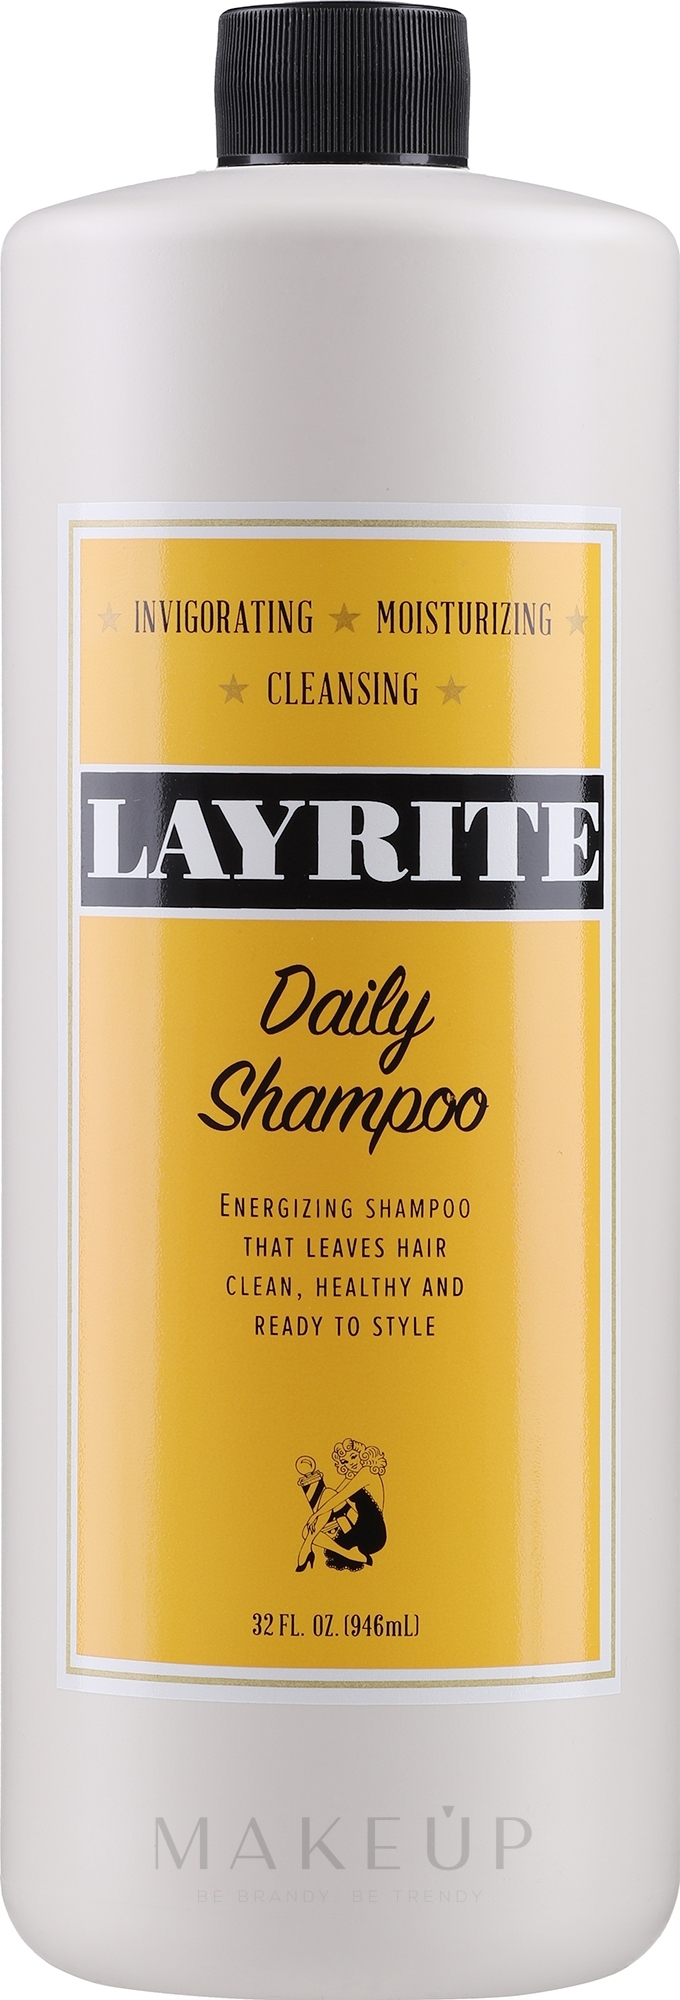 Haarshampoo für täglichen Gebracuh - Layrite Daily Shampoo — Bild 1000 ml